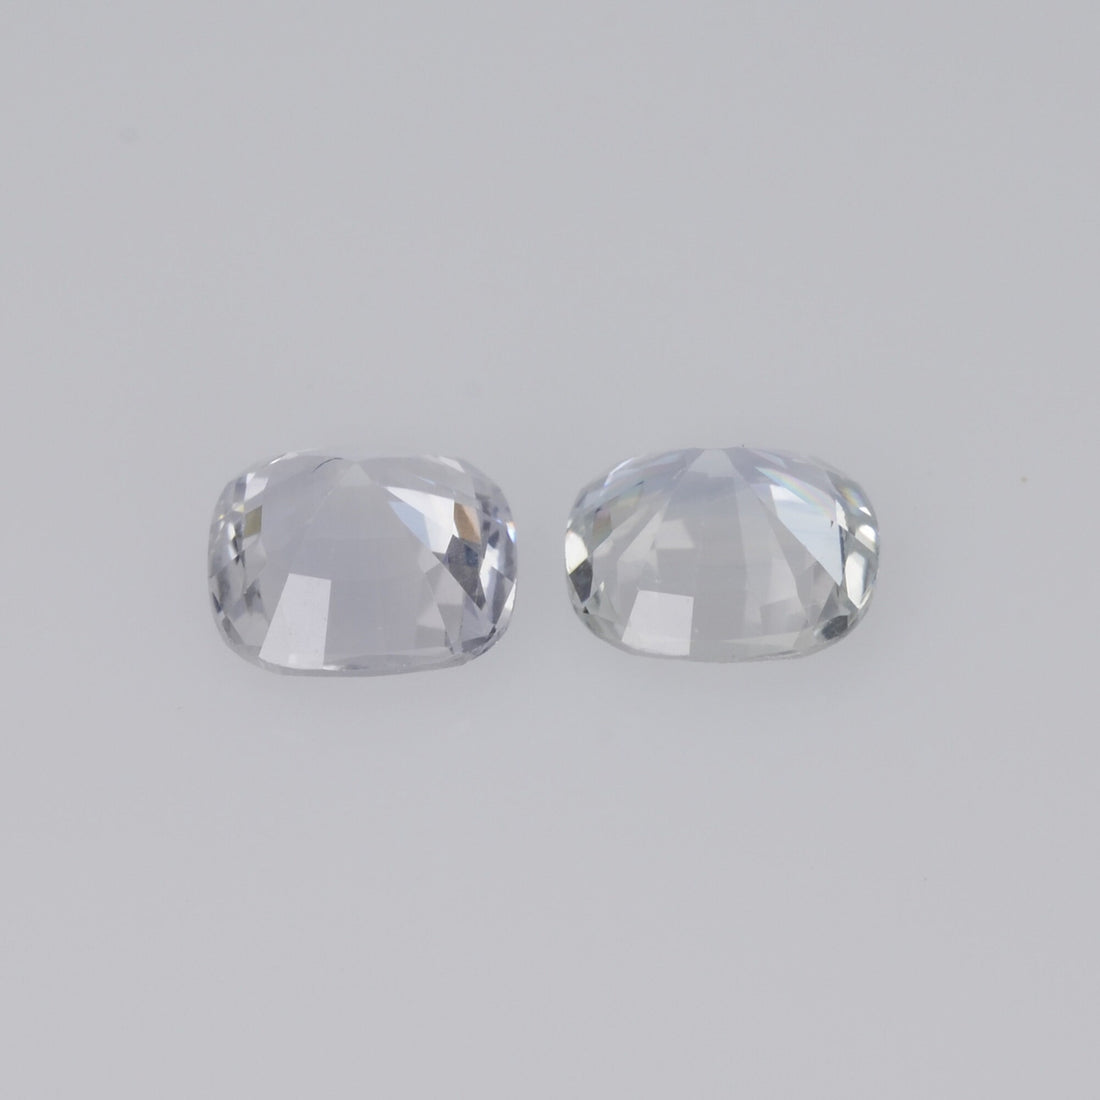 5x5 mm Natural Calibrated White Sapphire Loose Gemstone Pair Cushion Cut